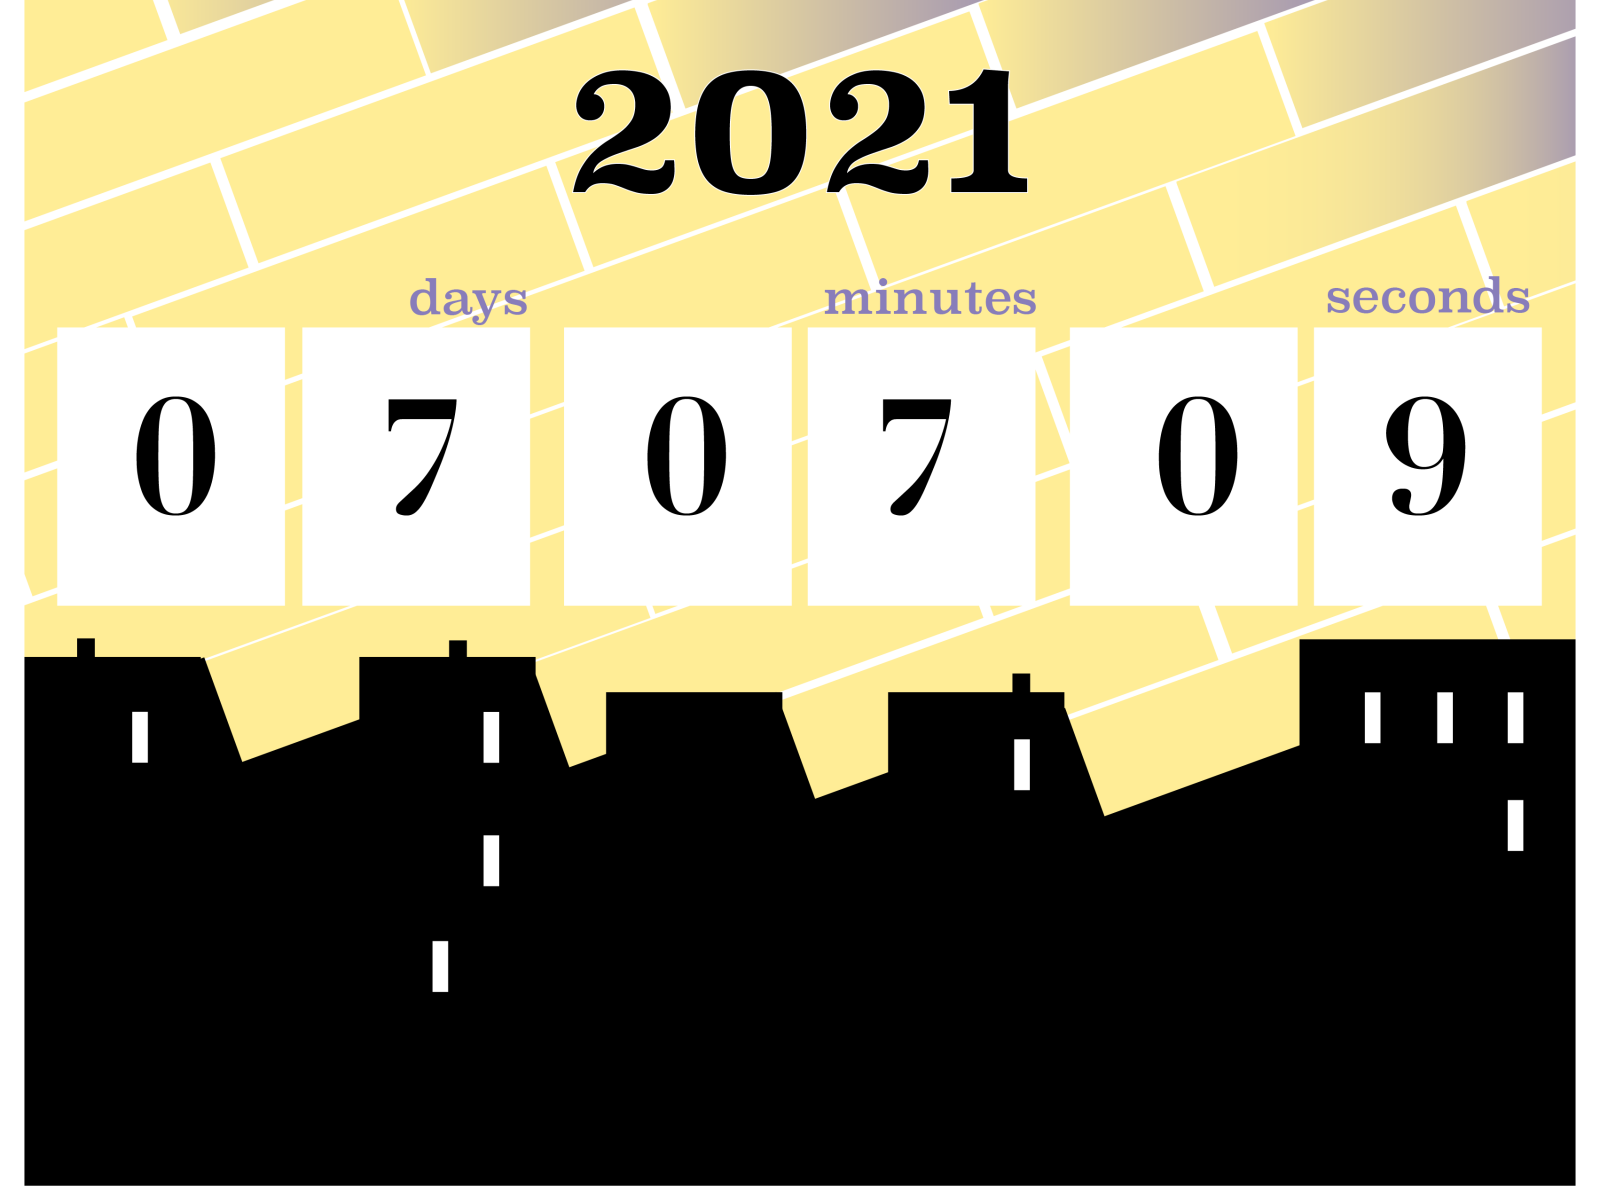 2021 countdown clock